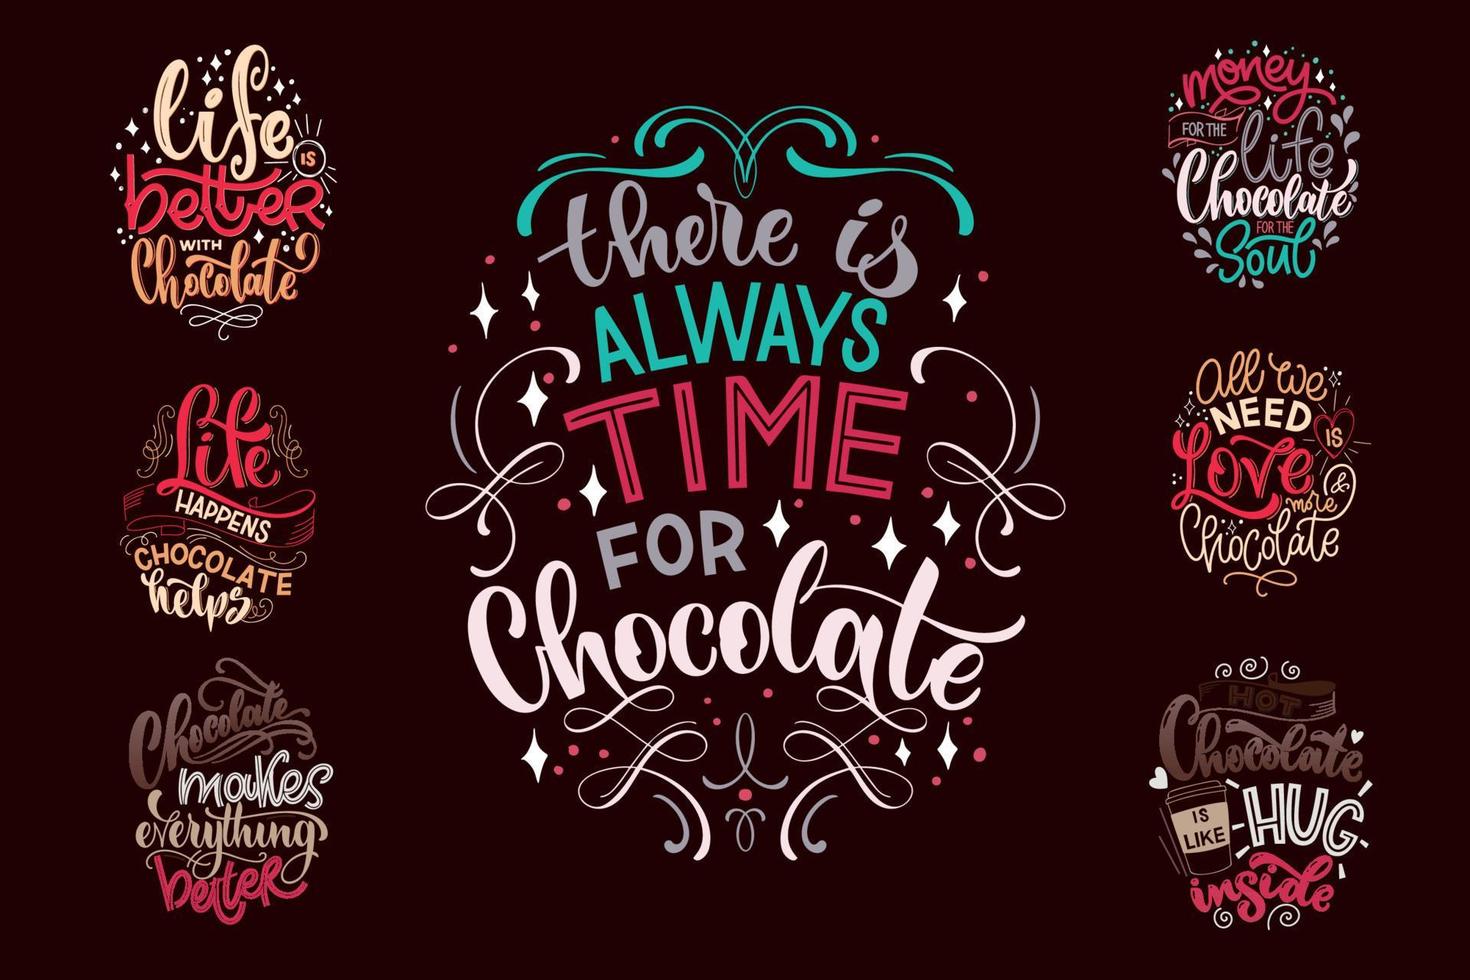 cioccolato mano lettering citazioni impostare. vettore